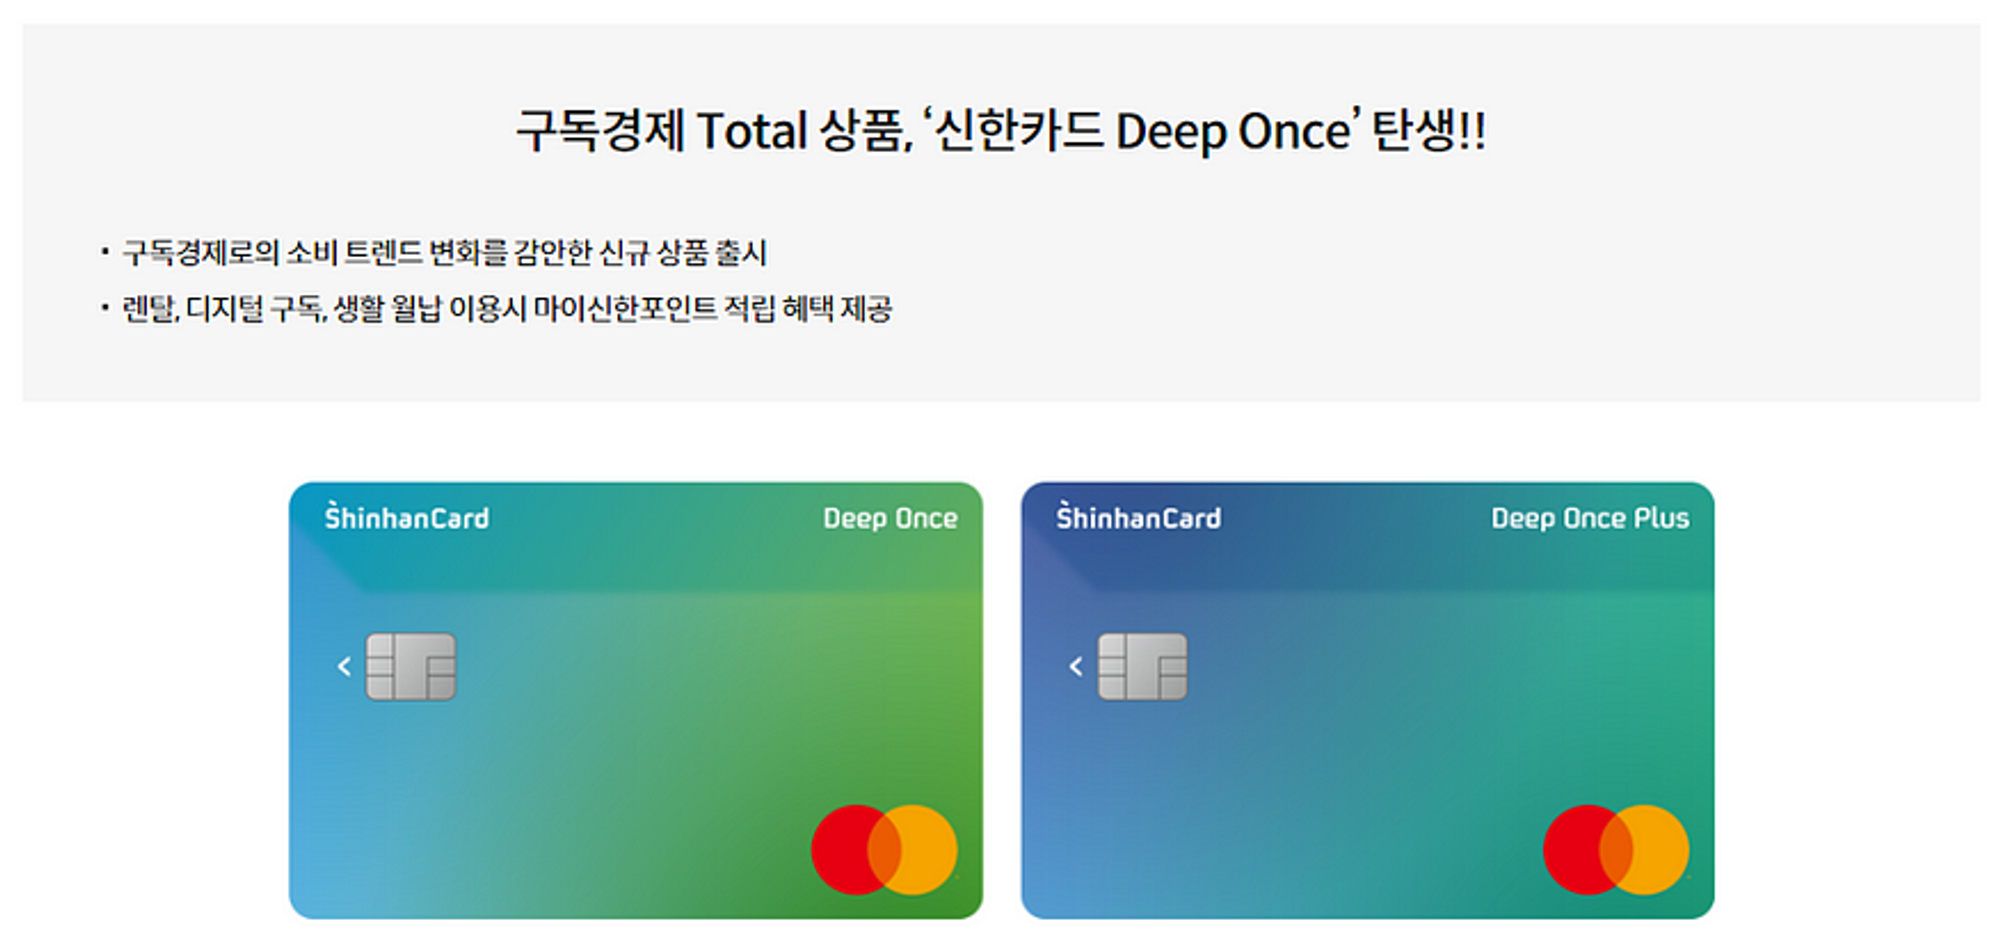 구독 서비스 정기결제 건에 대해 포인트 적립을 제공하는 신한카드 Deep Once (출처: 신한카드)